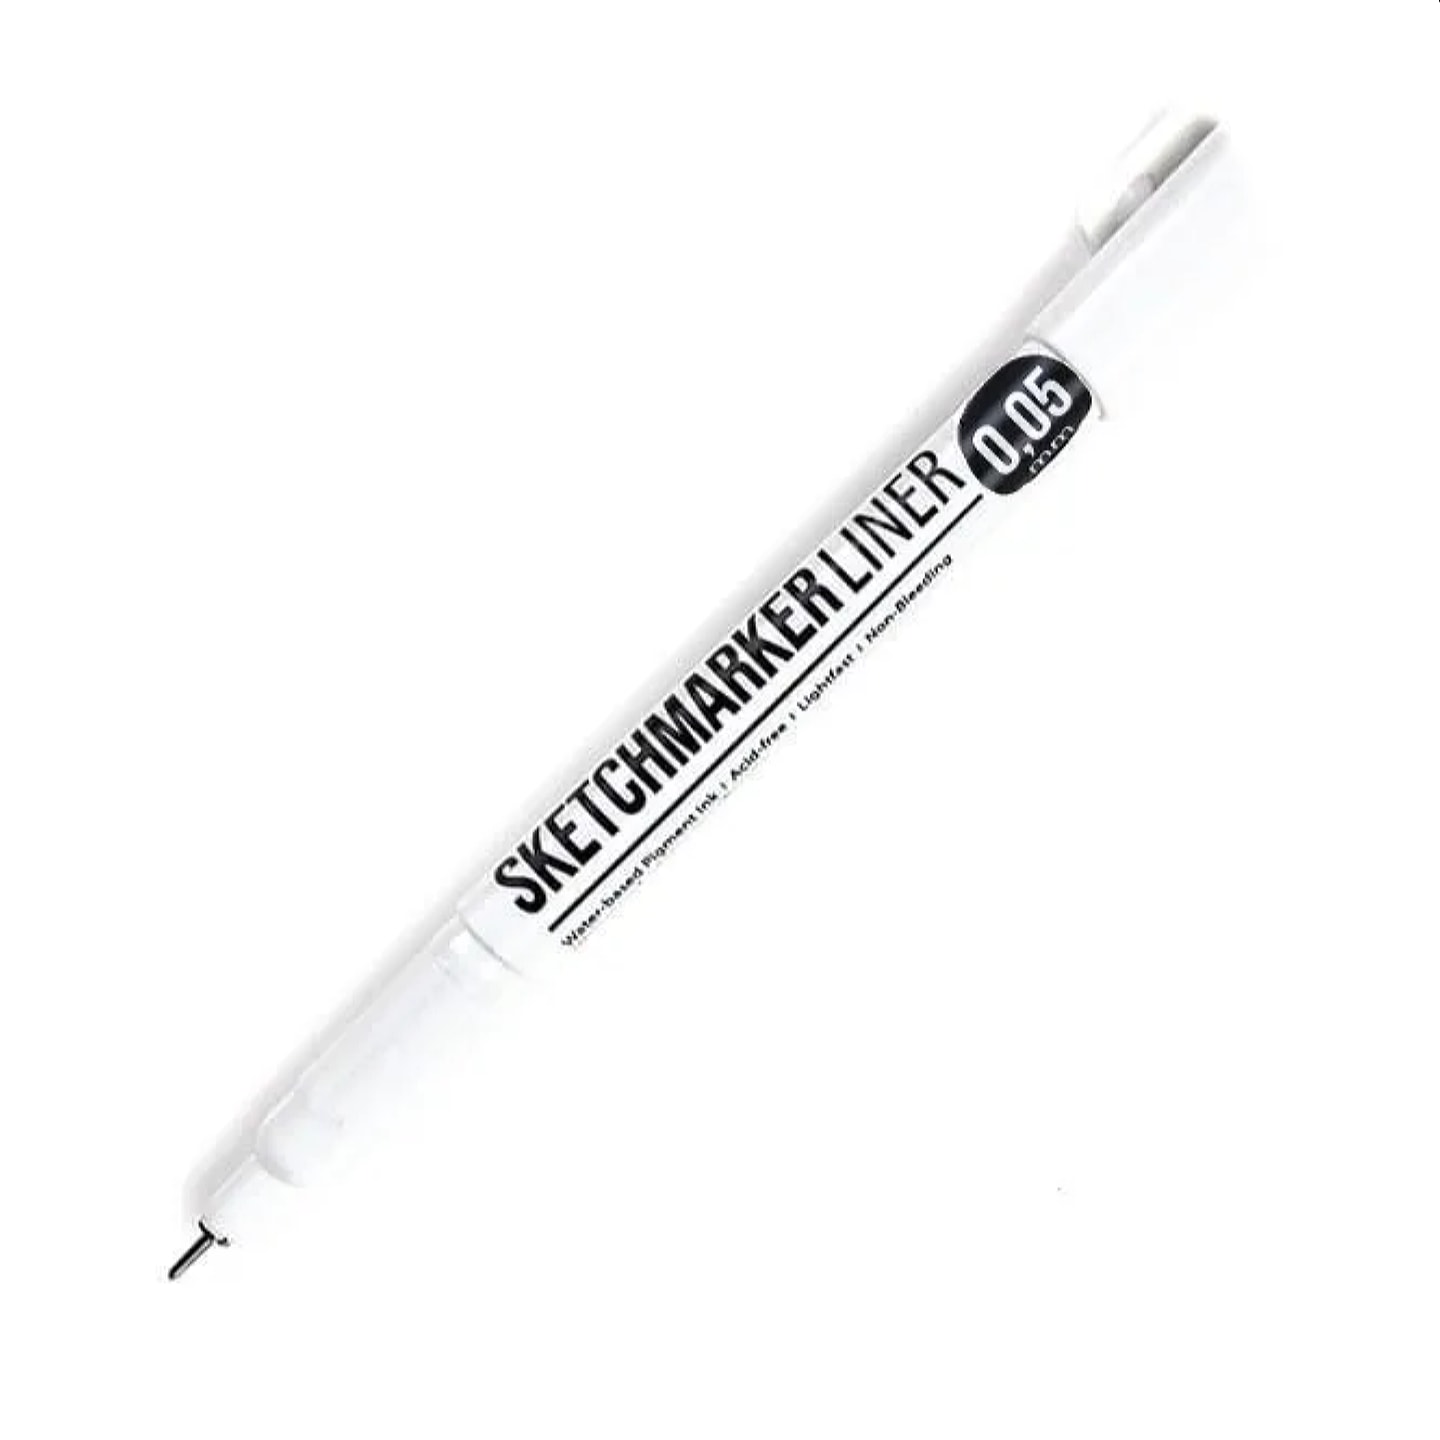 Ручка капиллярная (линер) SKETCHMARKER черный 6 размеров в ассортименте